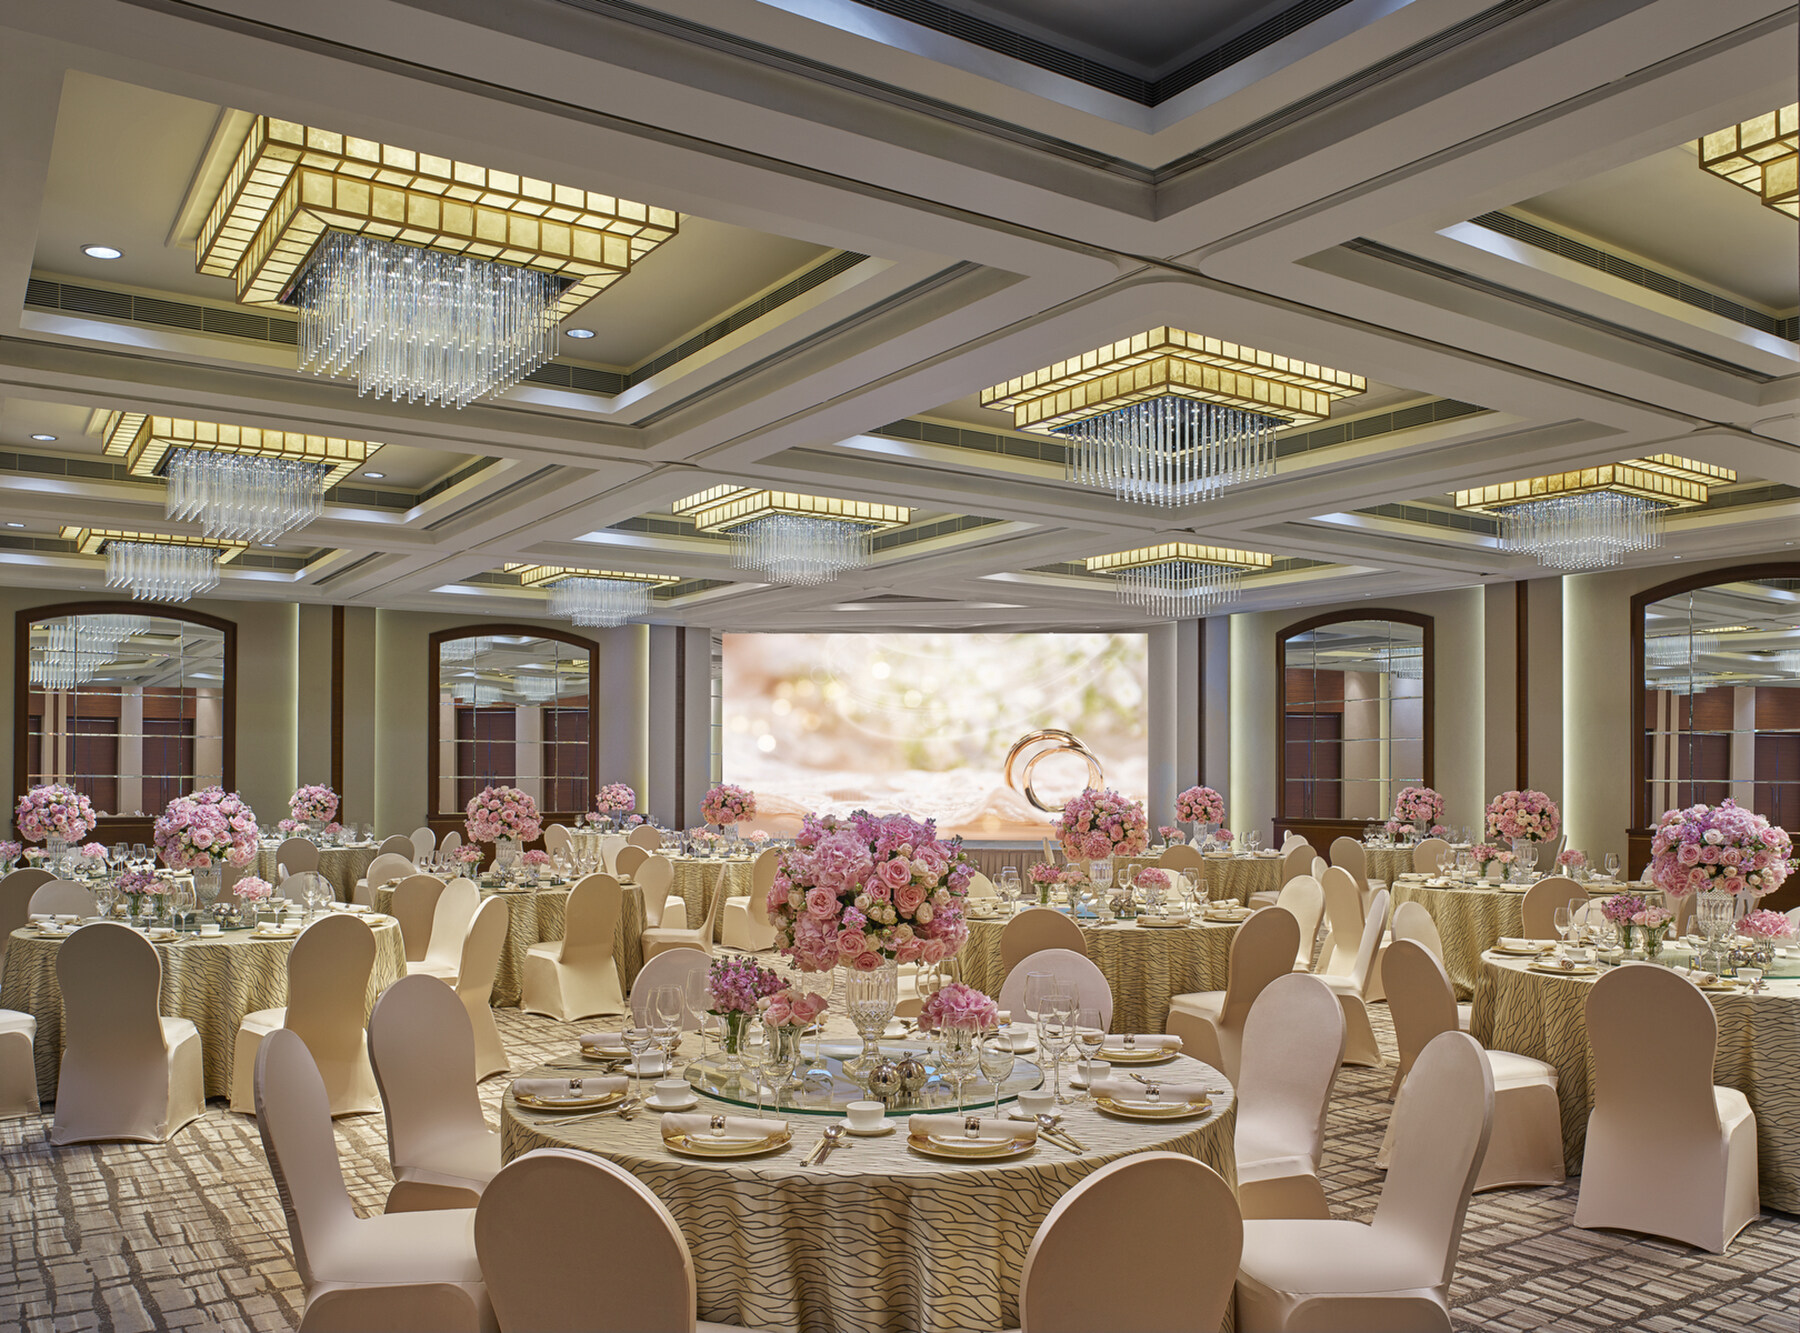 千禧新世界香港酒店在2017年底剛完成大規模翻新，其宴會場地也以全新